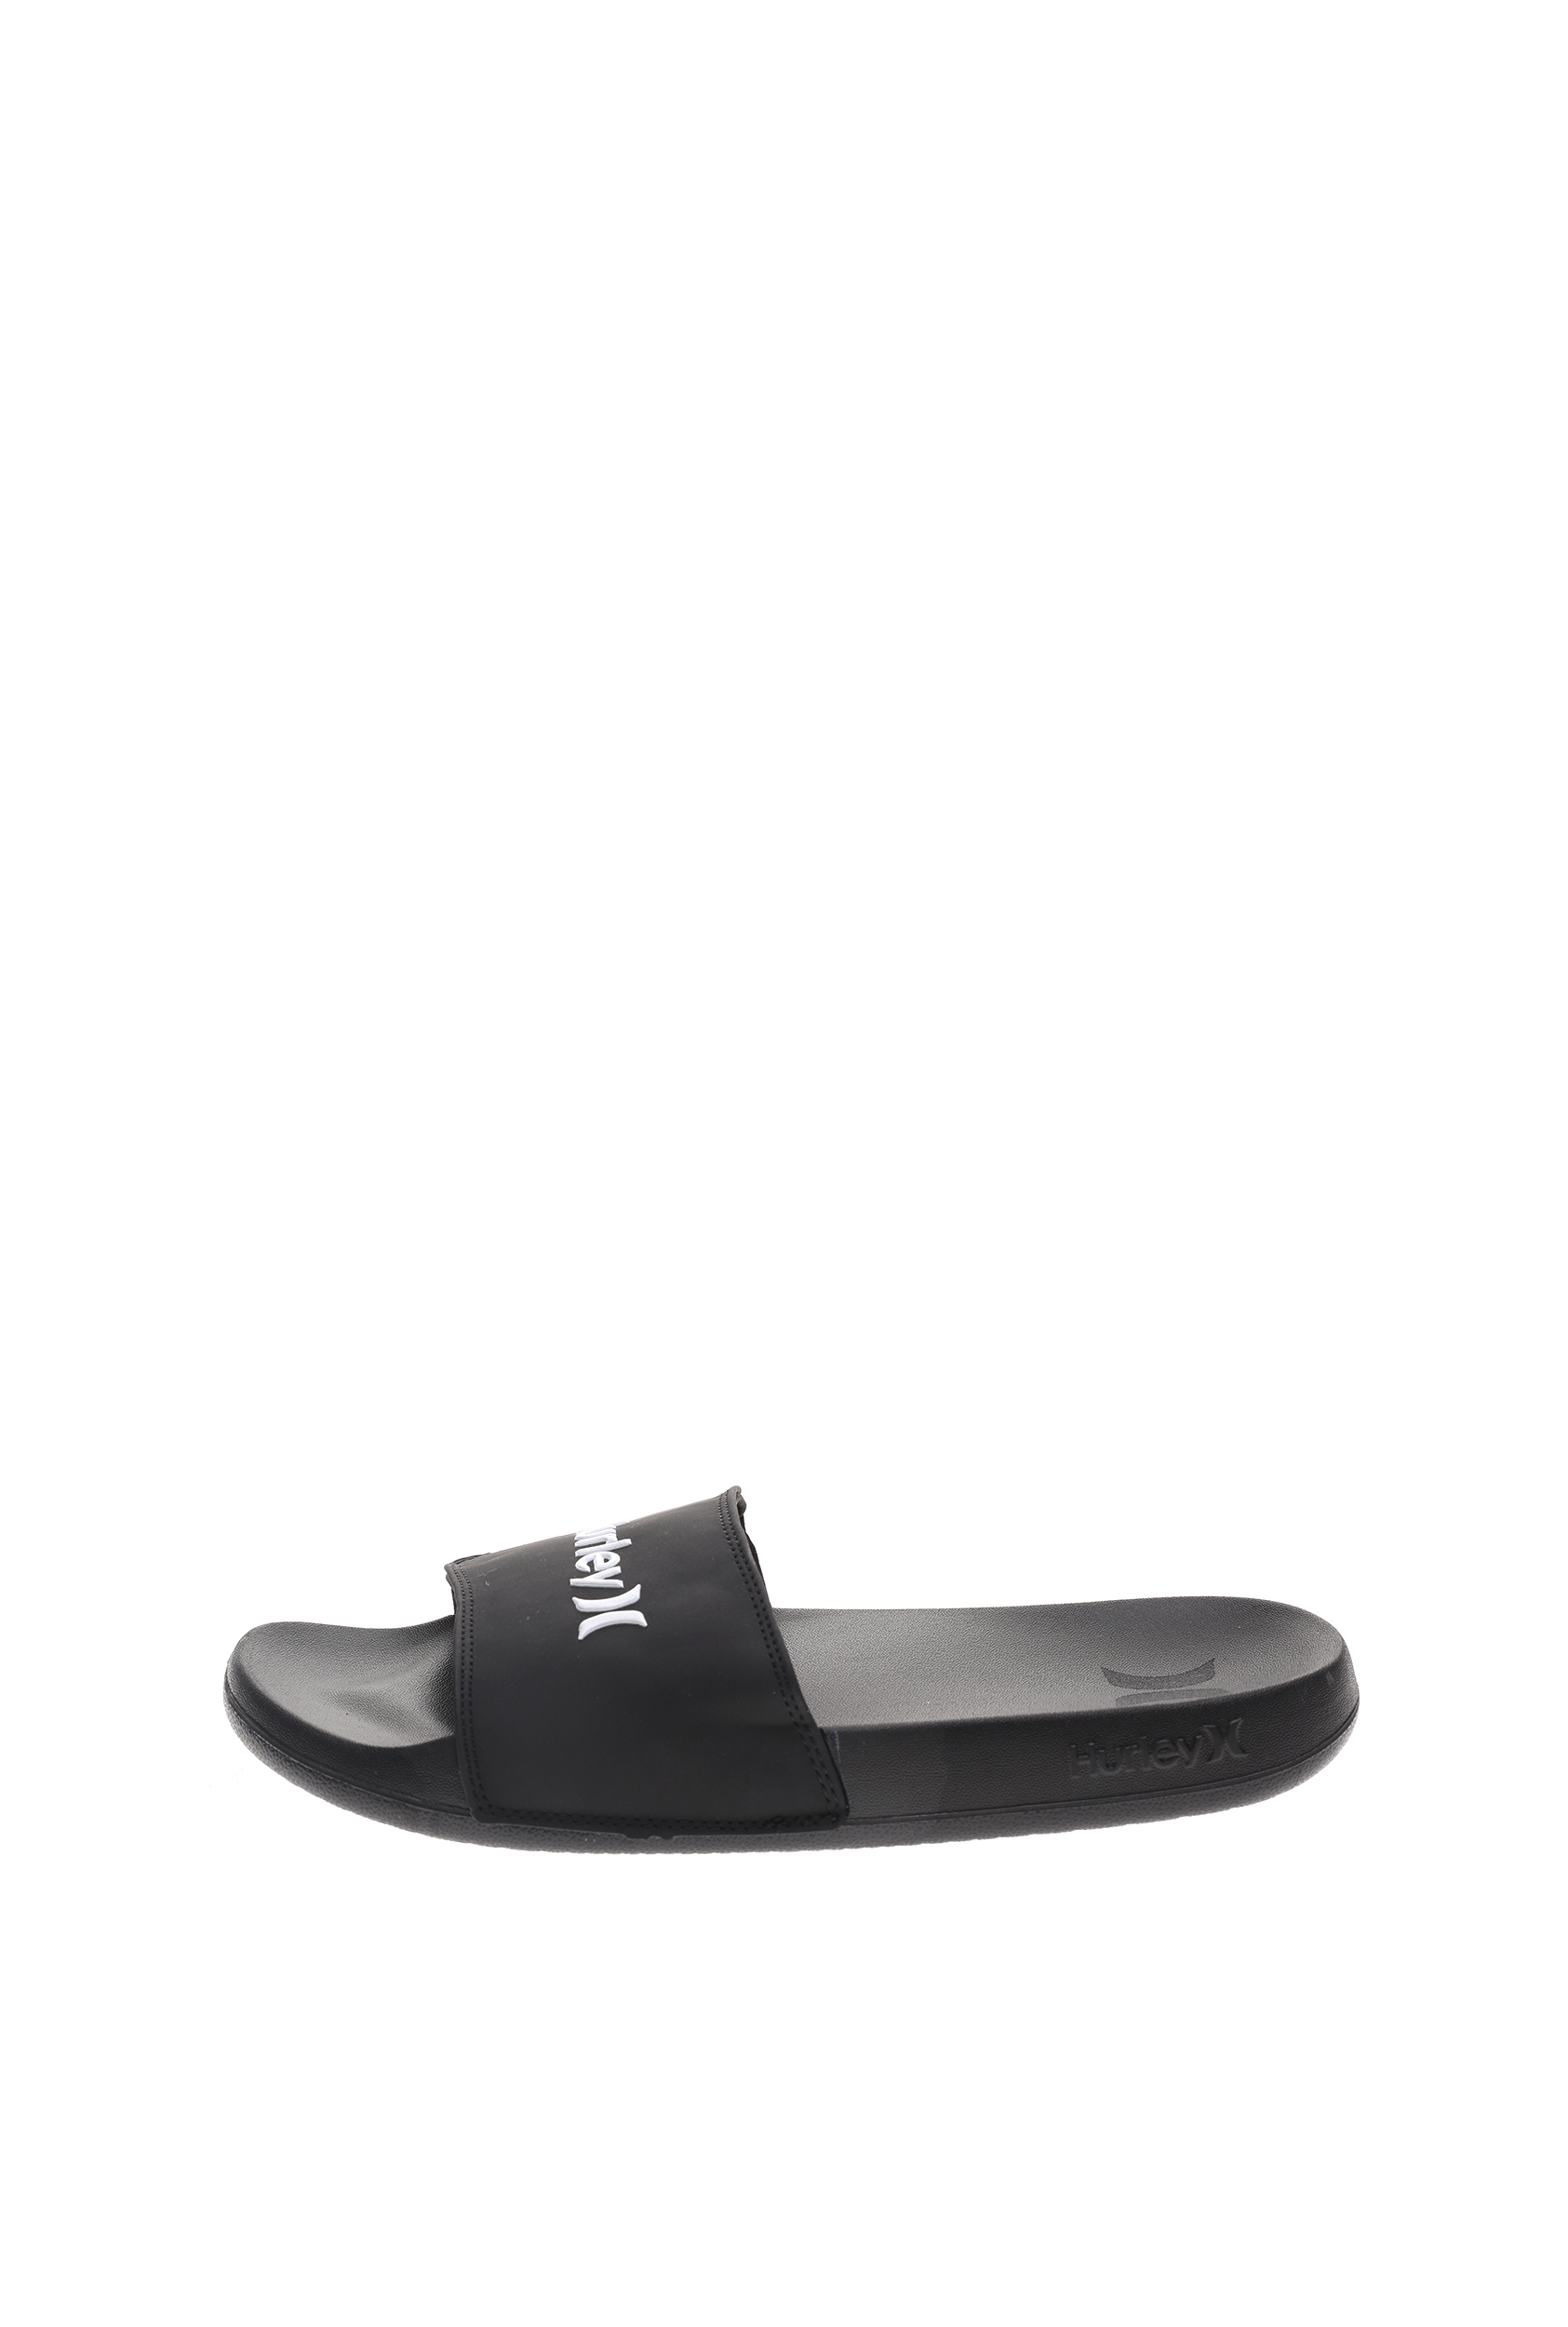 HURLEY - Ανδρικές παντόφλες HURLEY M MACK STRETCH SLIDE μαύρες Ανδρικά/Παπούτσια/Παντόφλες